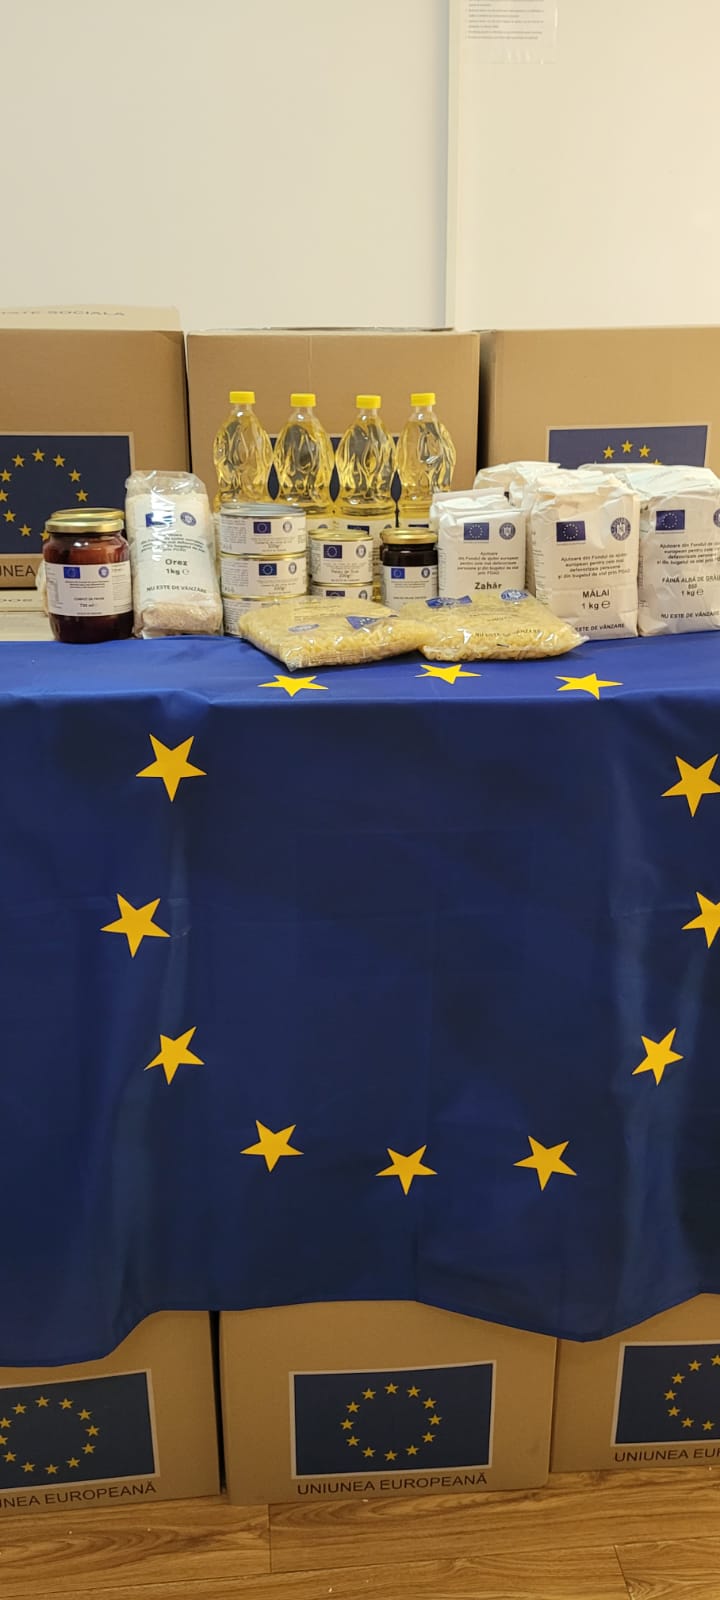 ANUNȚ Distribuire produse de igienă din fondurile UNIUNII EUROPENE POAD 2018/2021